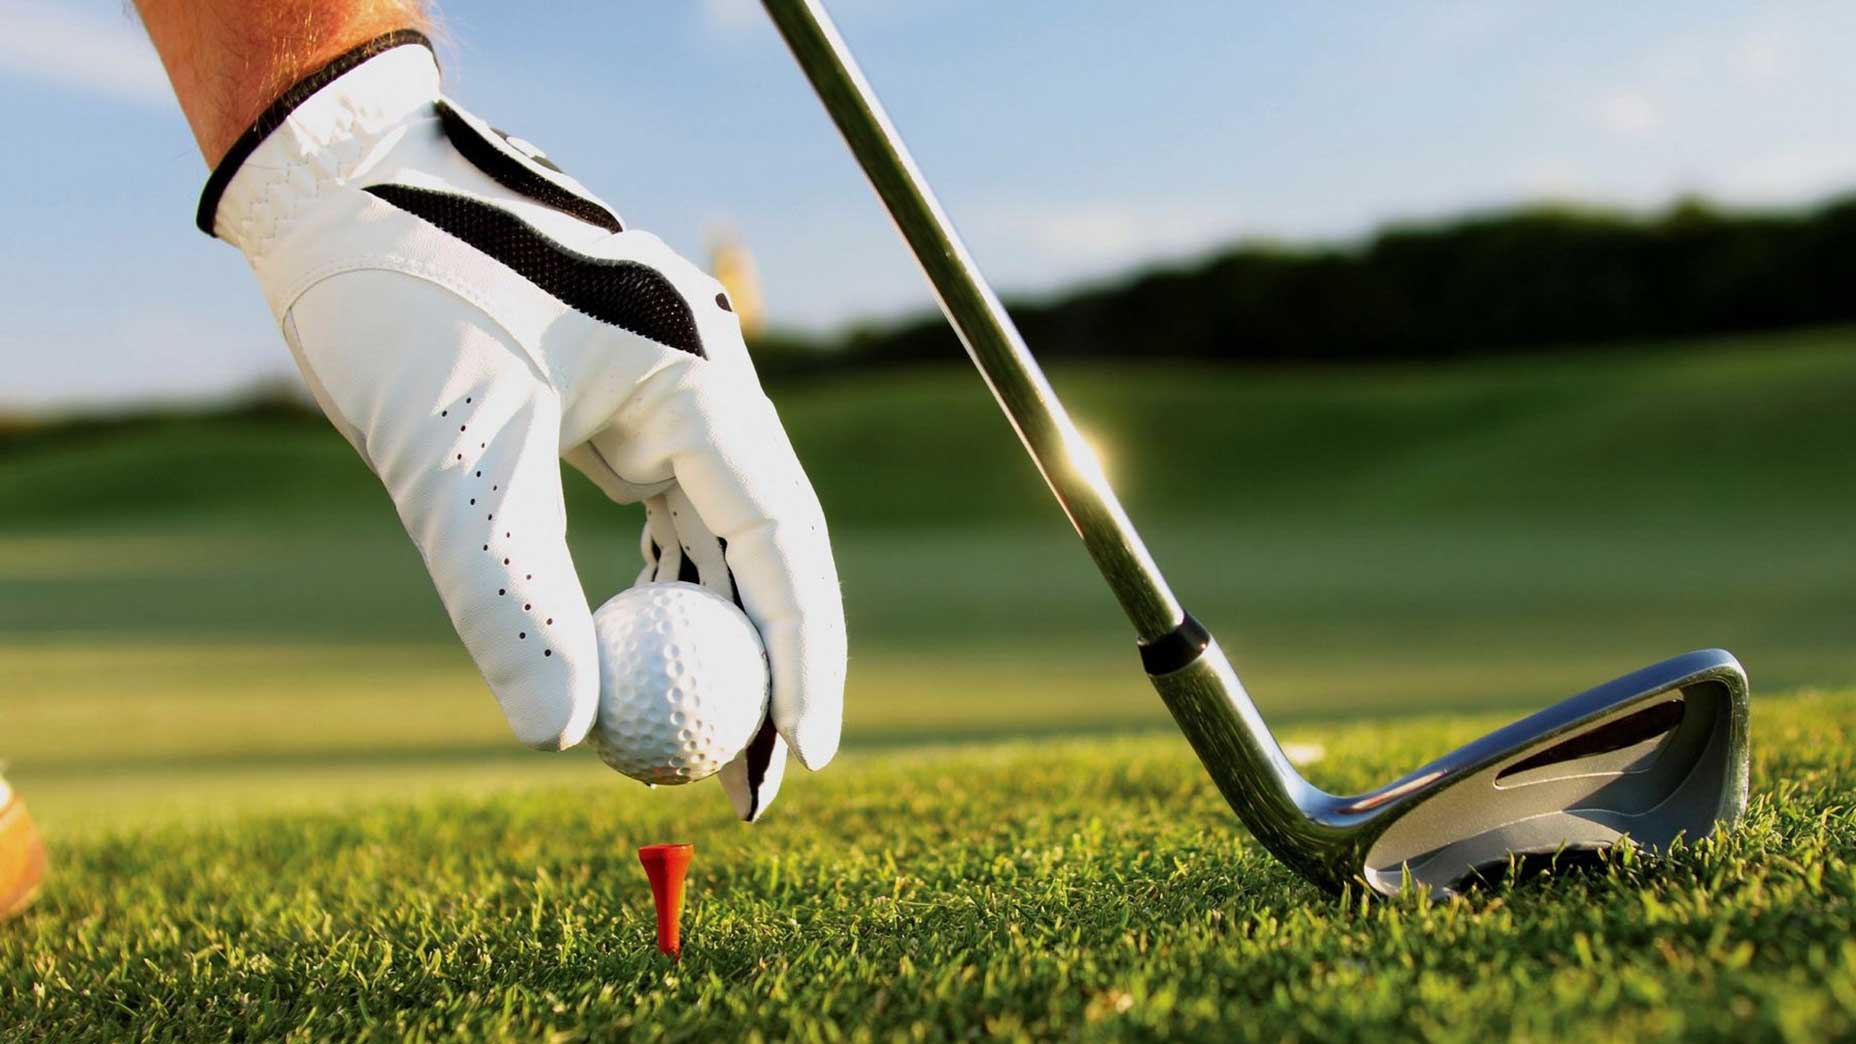 Premium Golf Brands at Under Par Pricing – Golf Styles